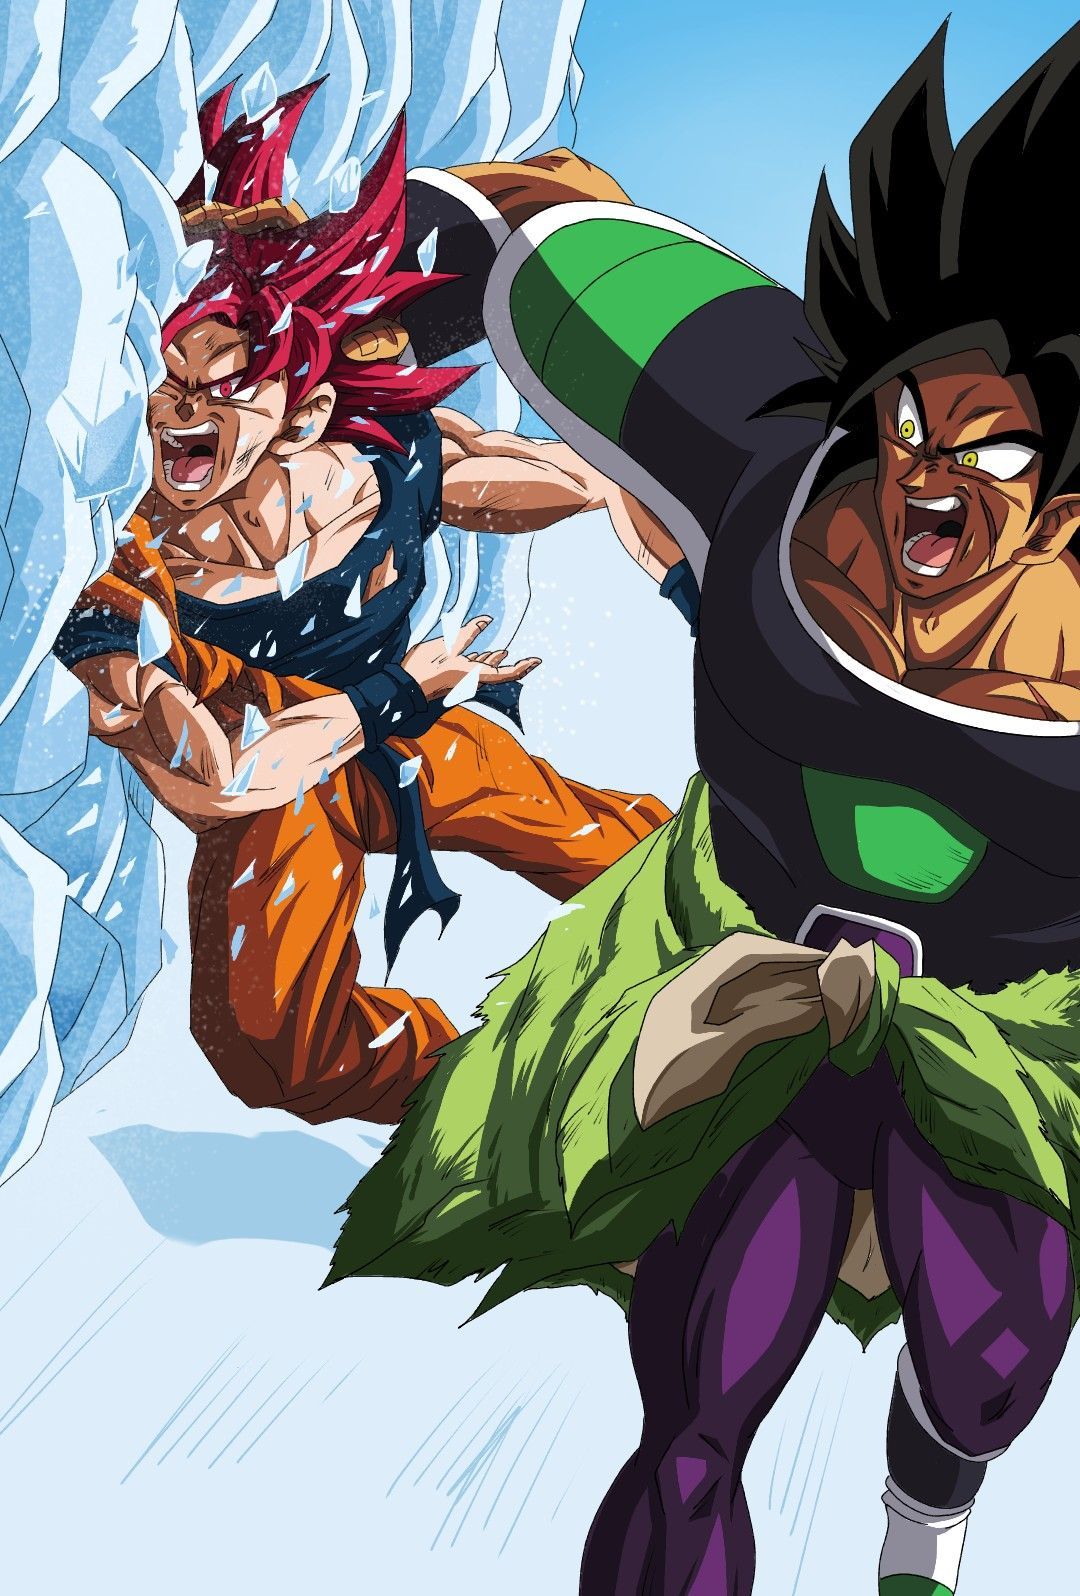 Broly vs Goku. Dragon ball super manga, Dragon ball artwork, Anime dragon ball